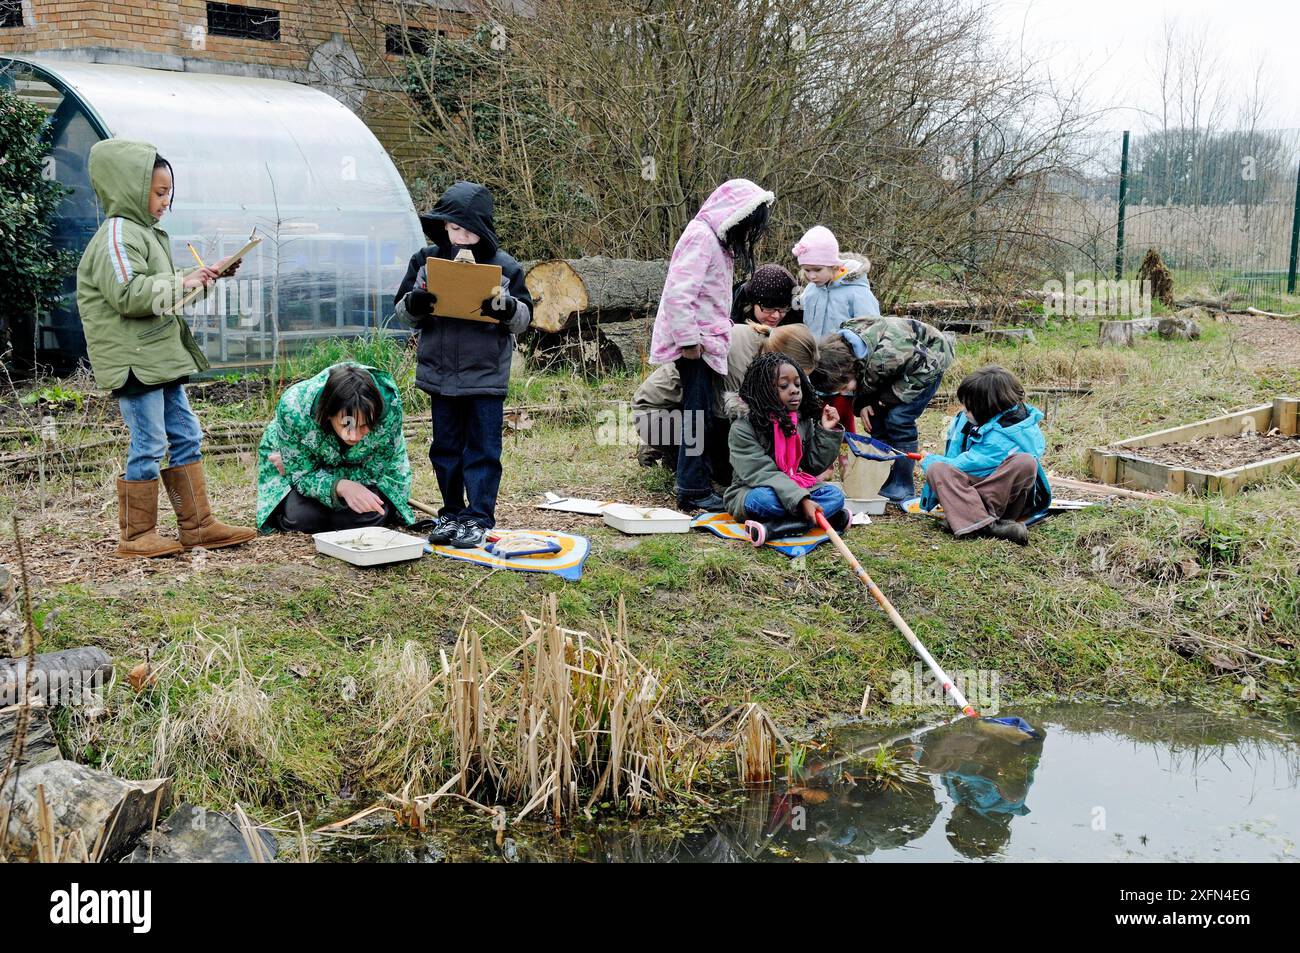 Gruppo di bambini con il loro stagno insegnante che si immerge in inverno, Stoke Newington East Reservoir, ora Woodberry Wetlands, London Borough of Hackney, Inghilterra, Regno Unito, marzo 2010. Foto Stock